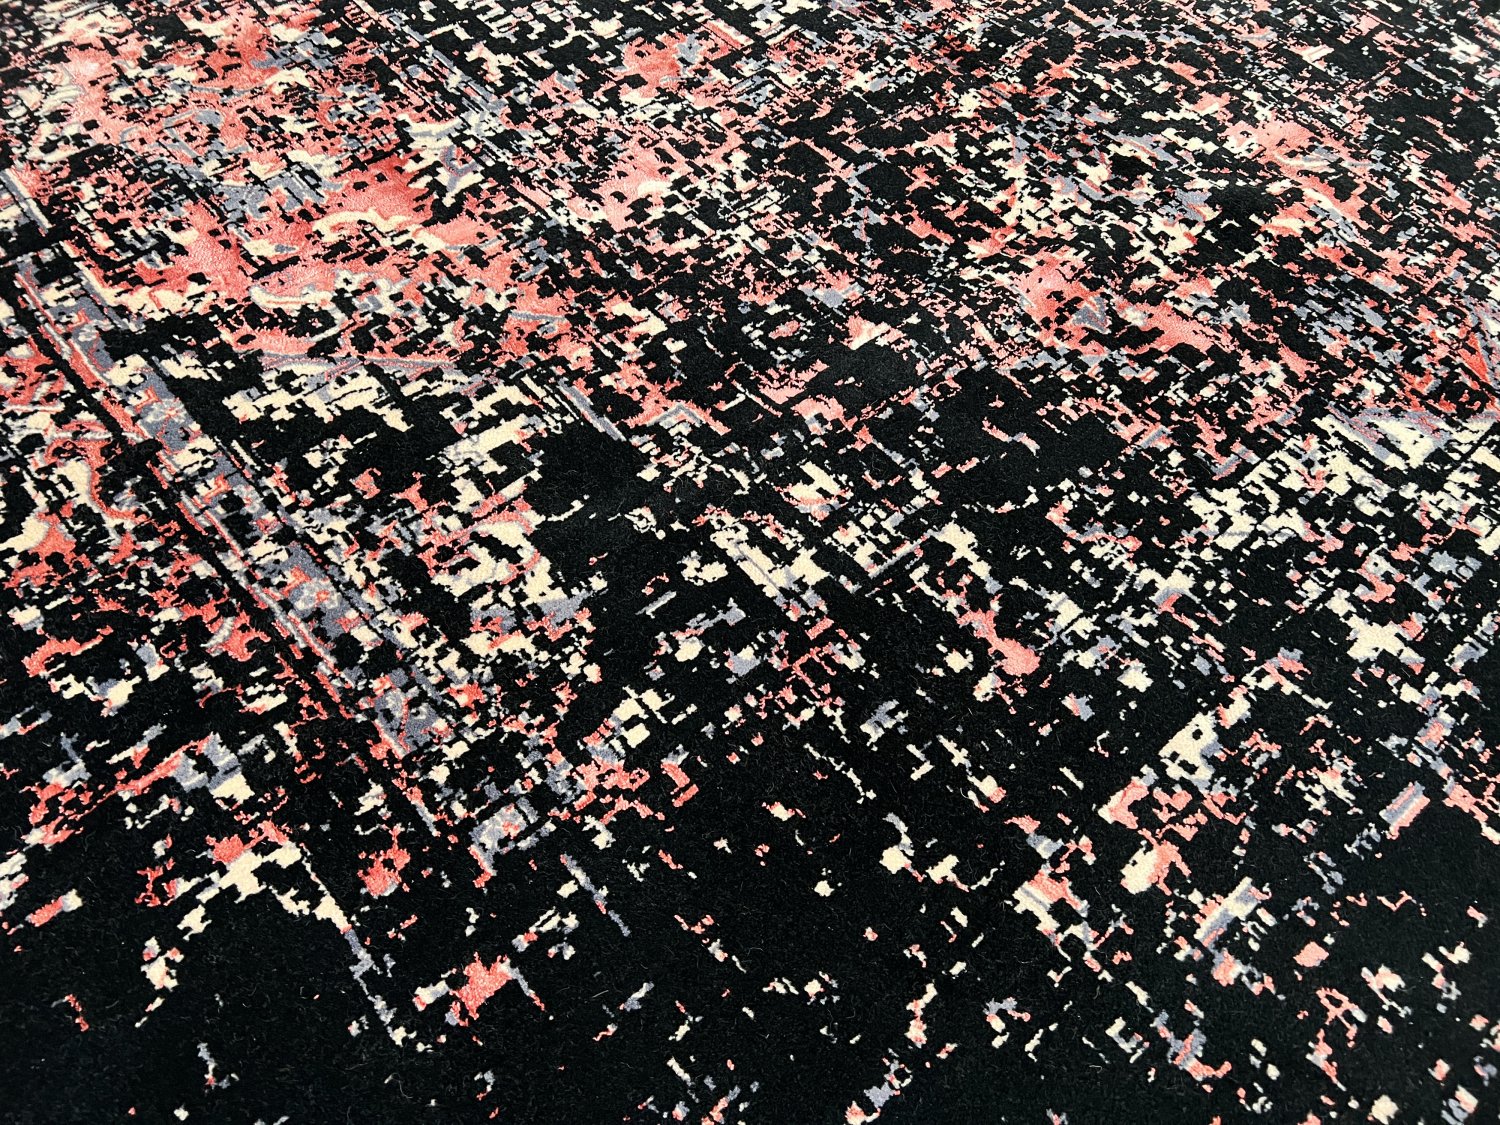 فرش پشمی ماشینی طبیعی و ارگانیک کد 0020 - زمینه مشکی - حاشیه گلبهی